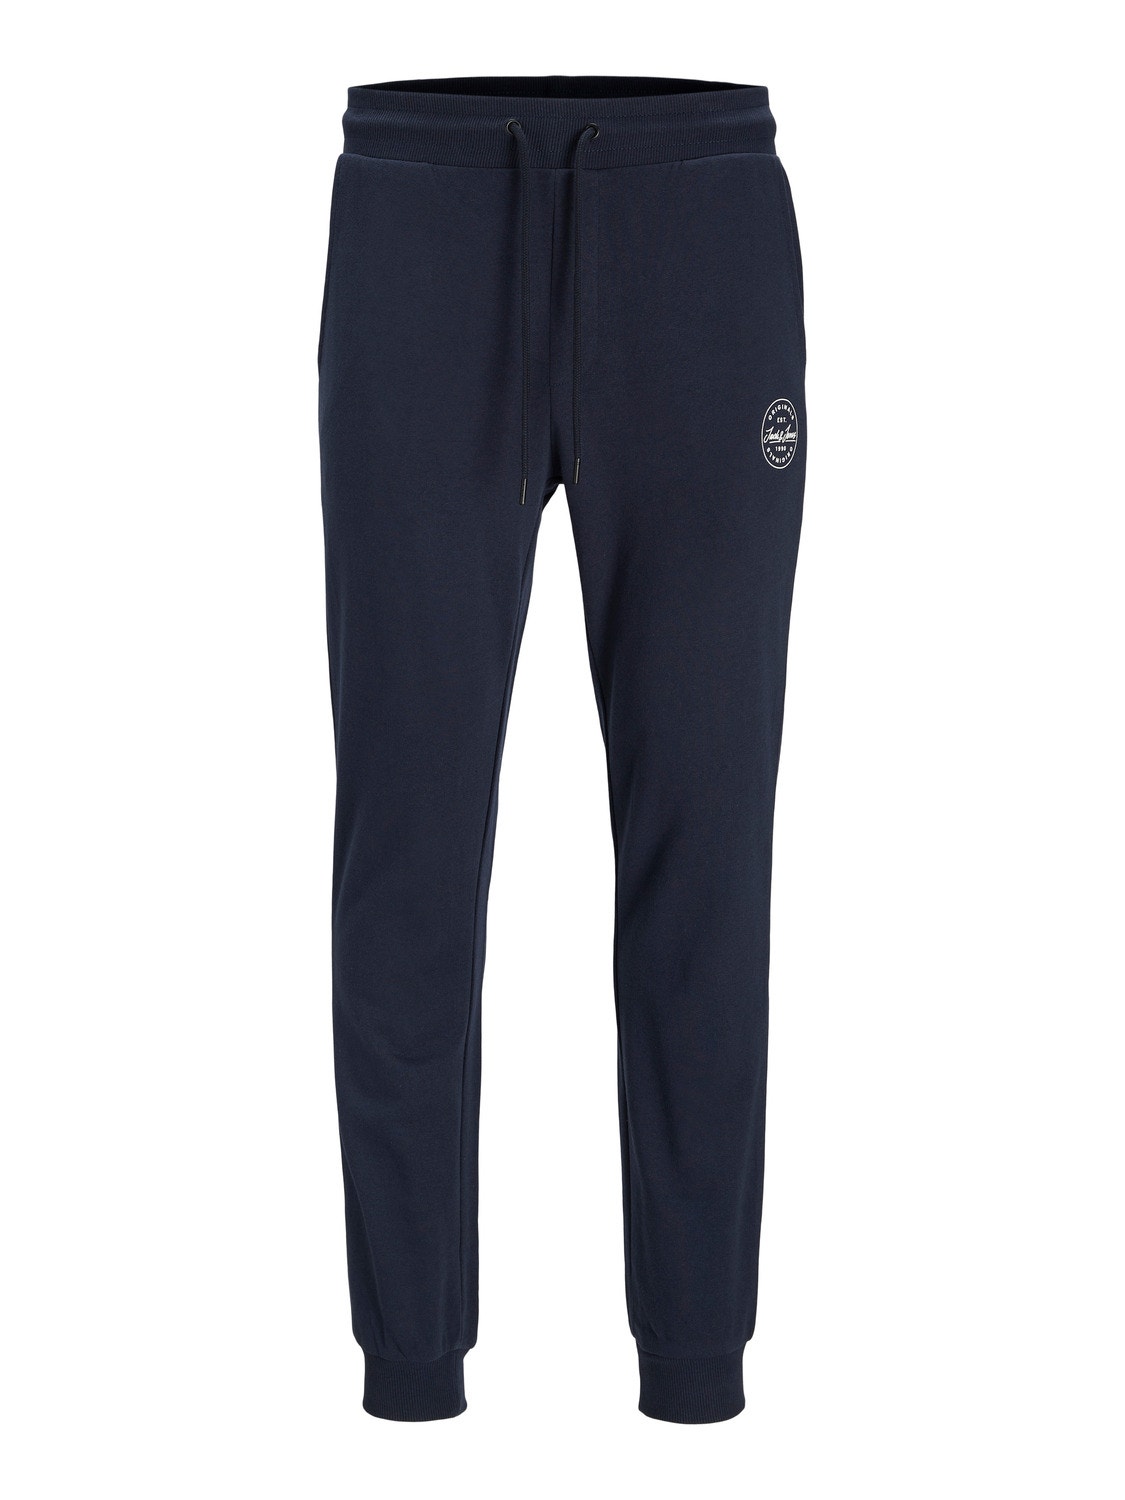 Jack & Jones Regular Fit Spodnie dresowe -Navy Blazer - 12165322